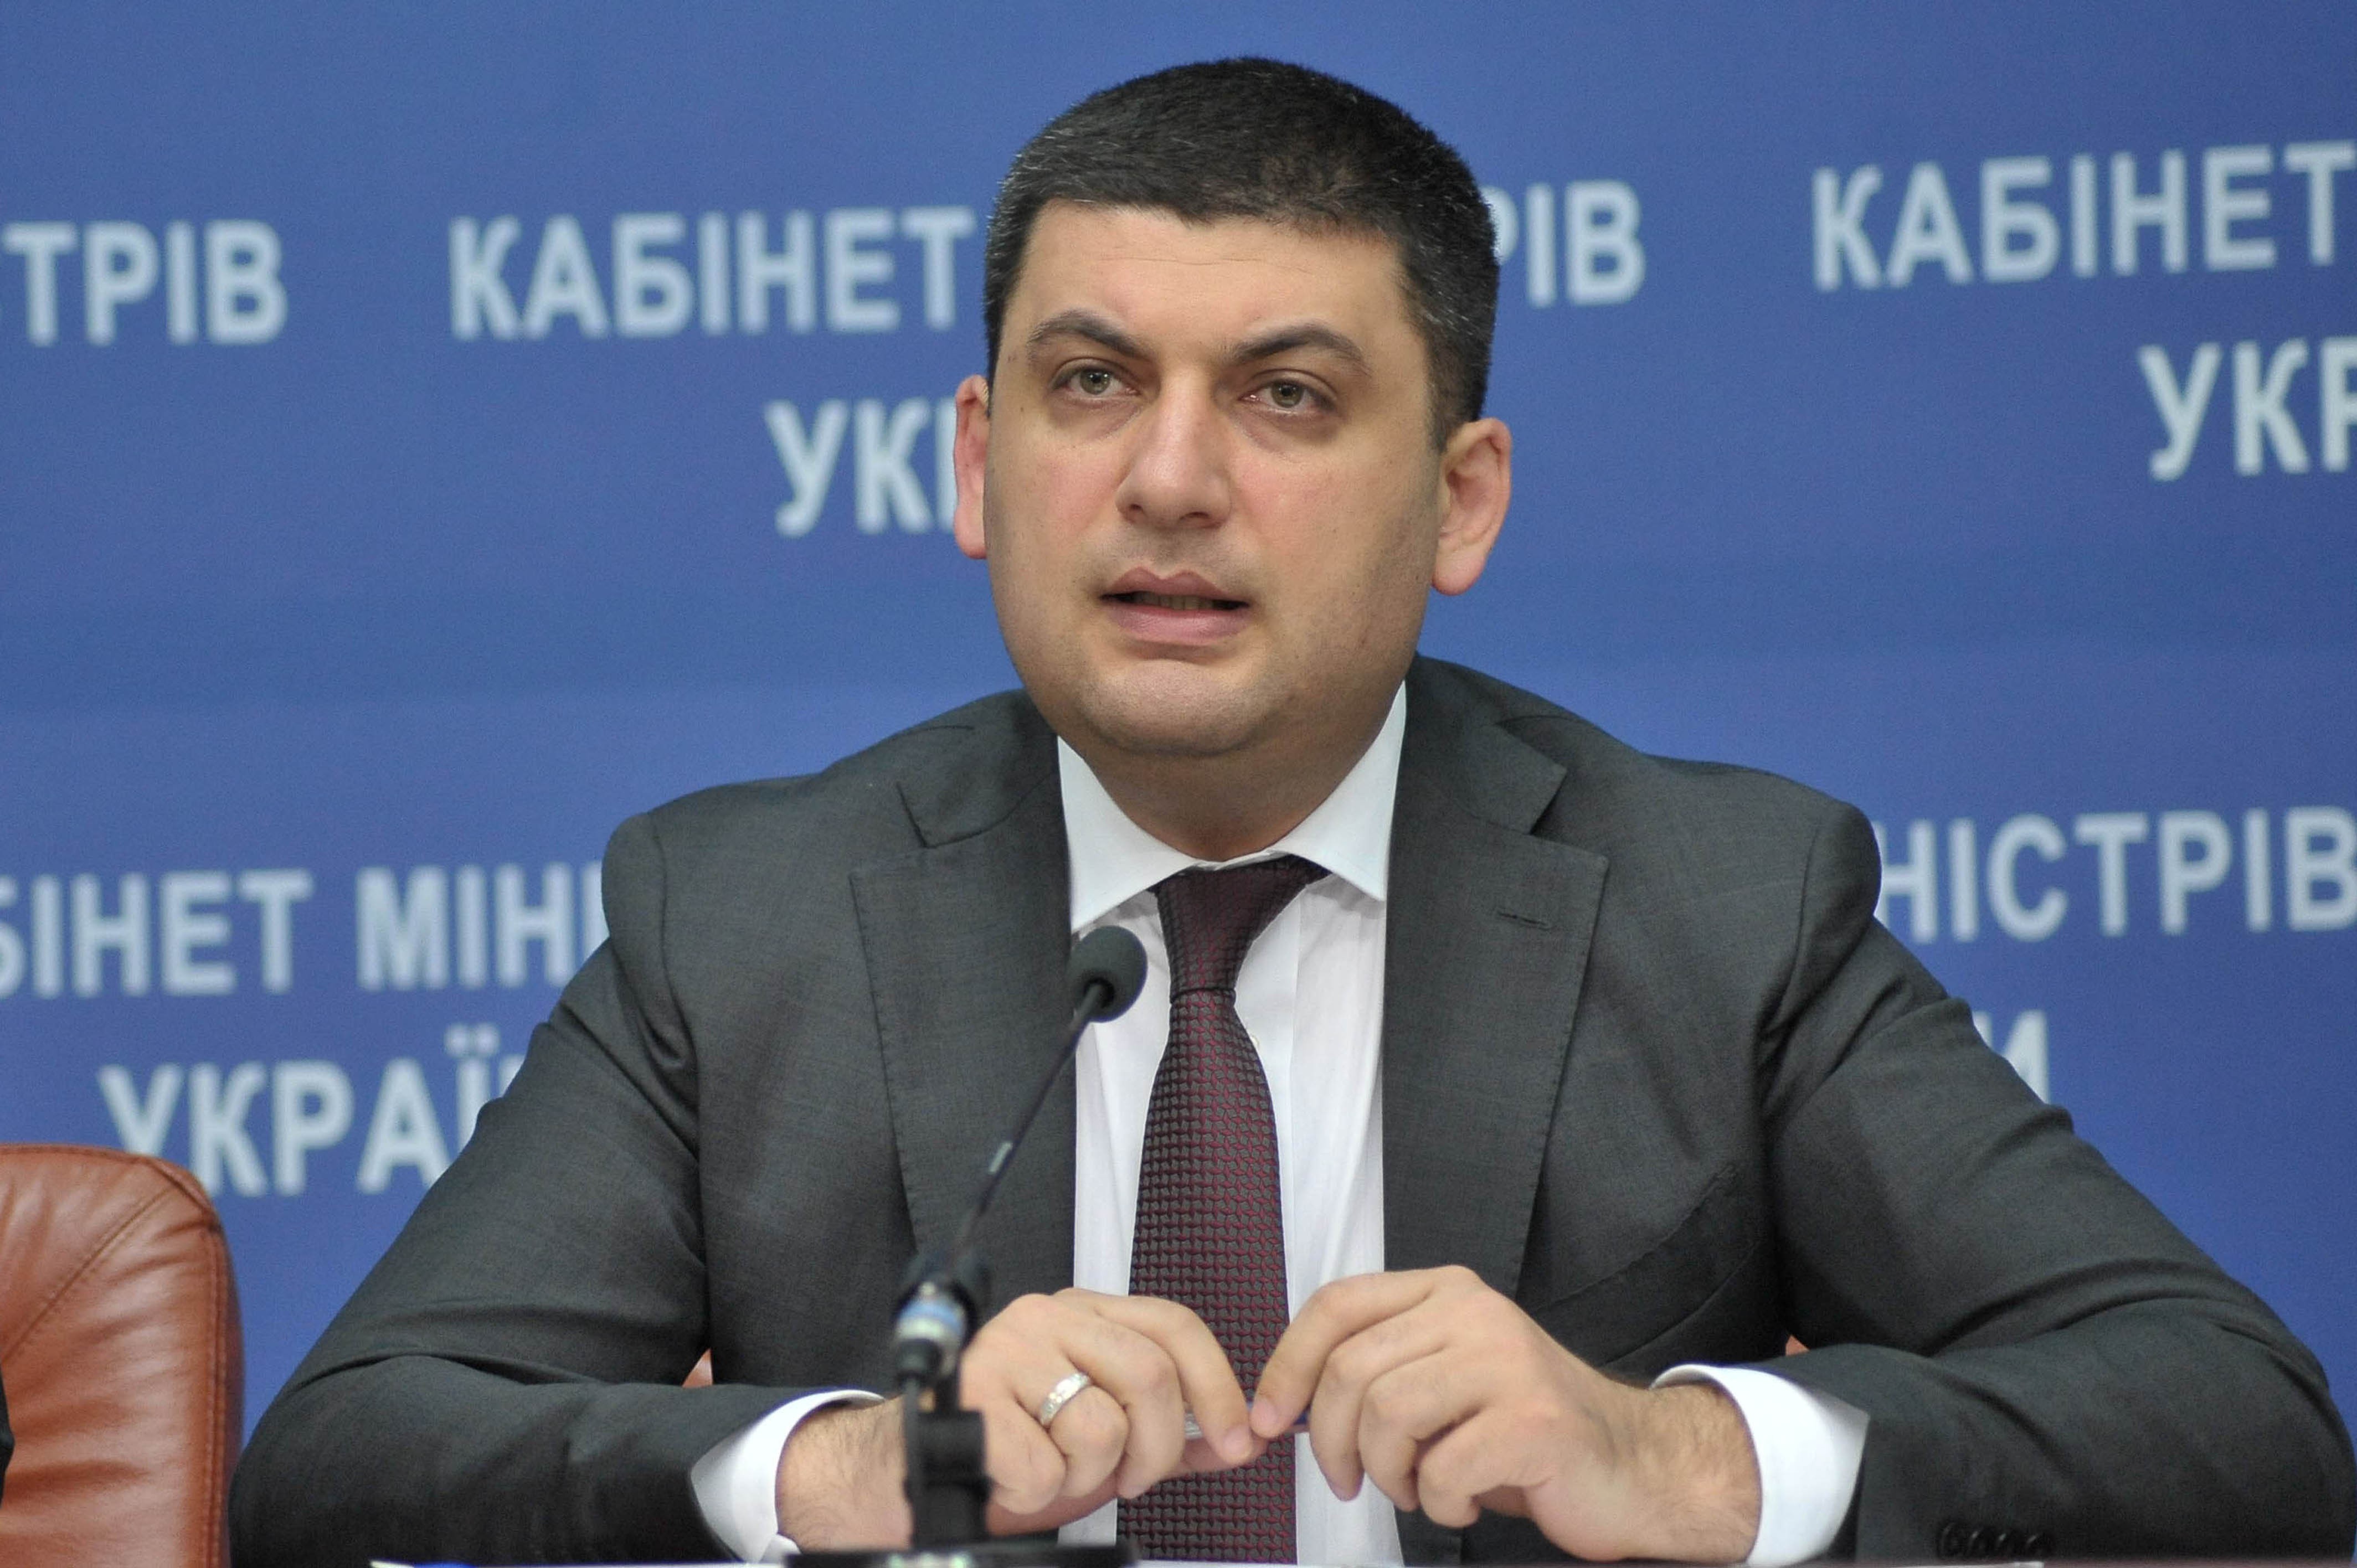 Гройсман объявил о создании в ВР Украины семи межфракционных депутатских объединений